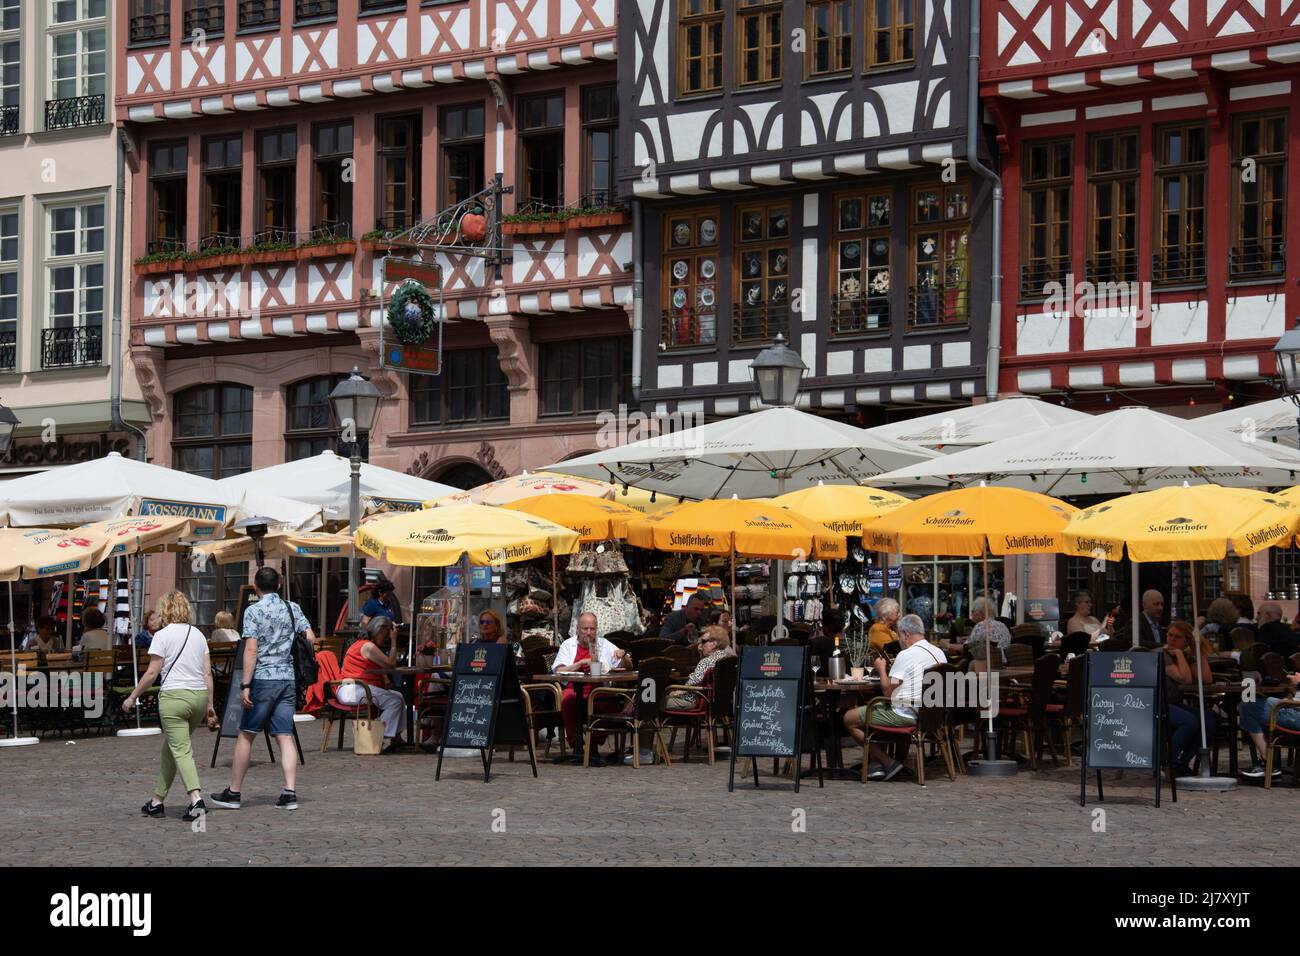 Sitzplätze im Freien in Restaurants am Römerberg, einem historischen Marktplatz, Frankfurt, Deutschland Stockfoto